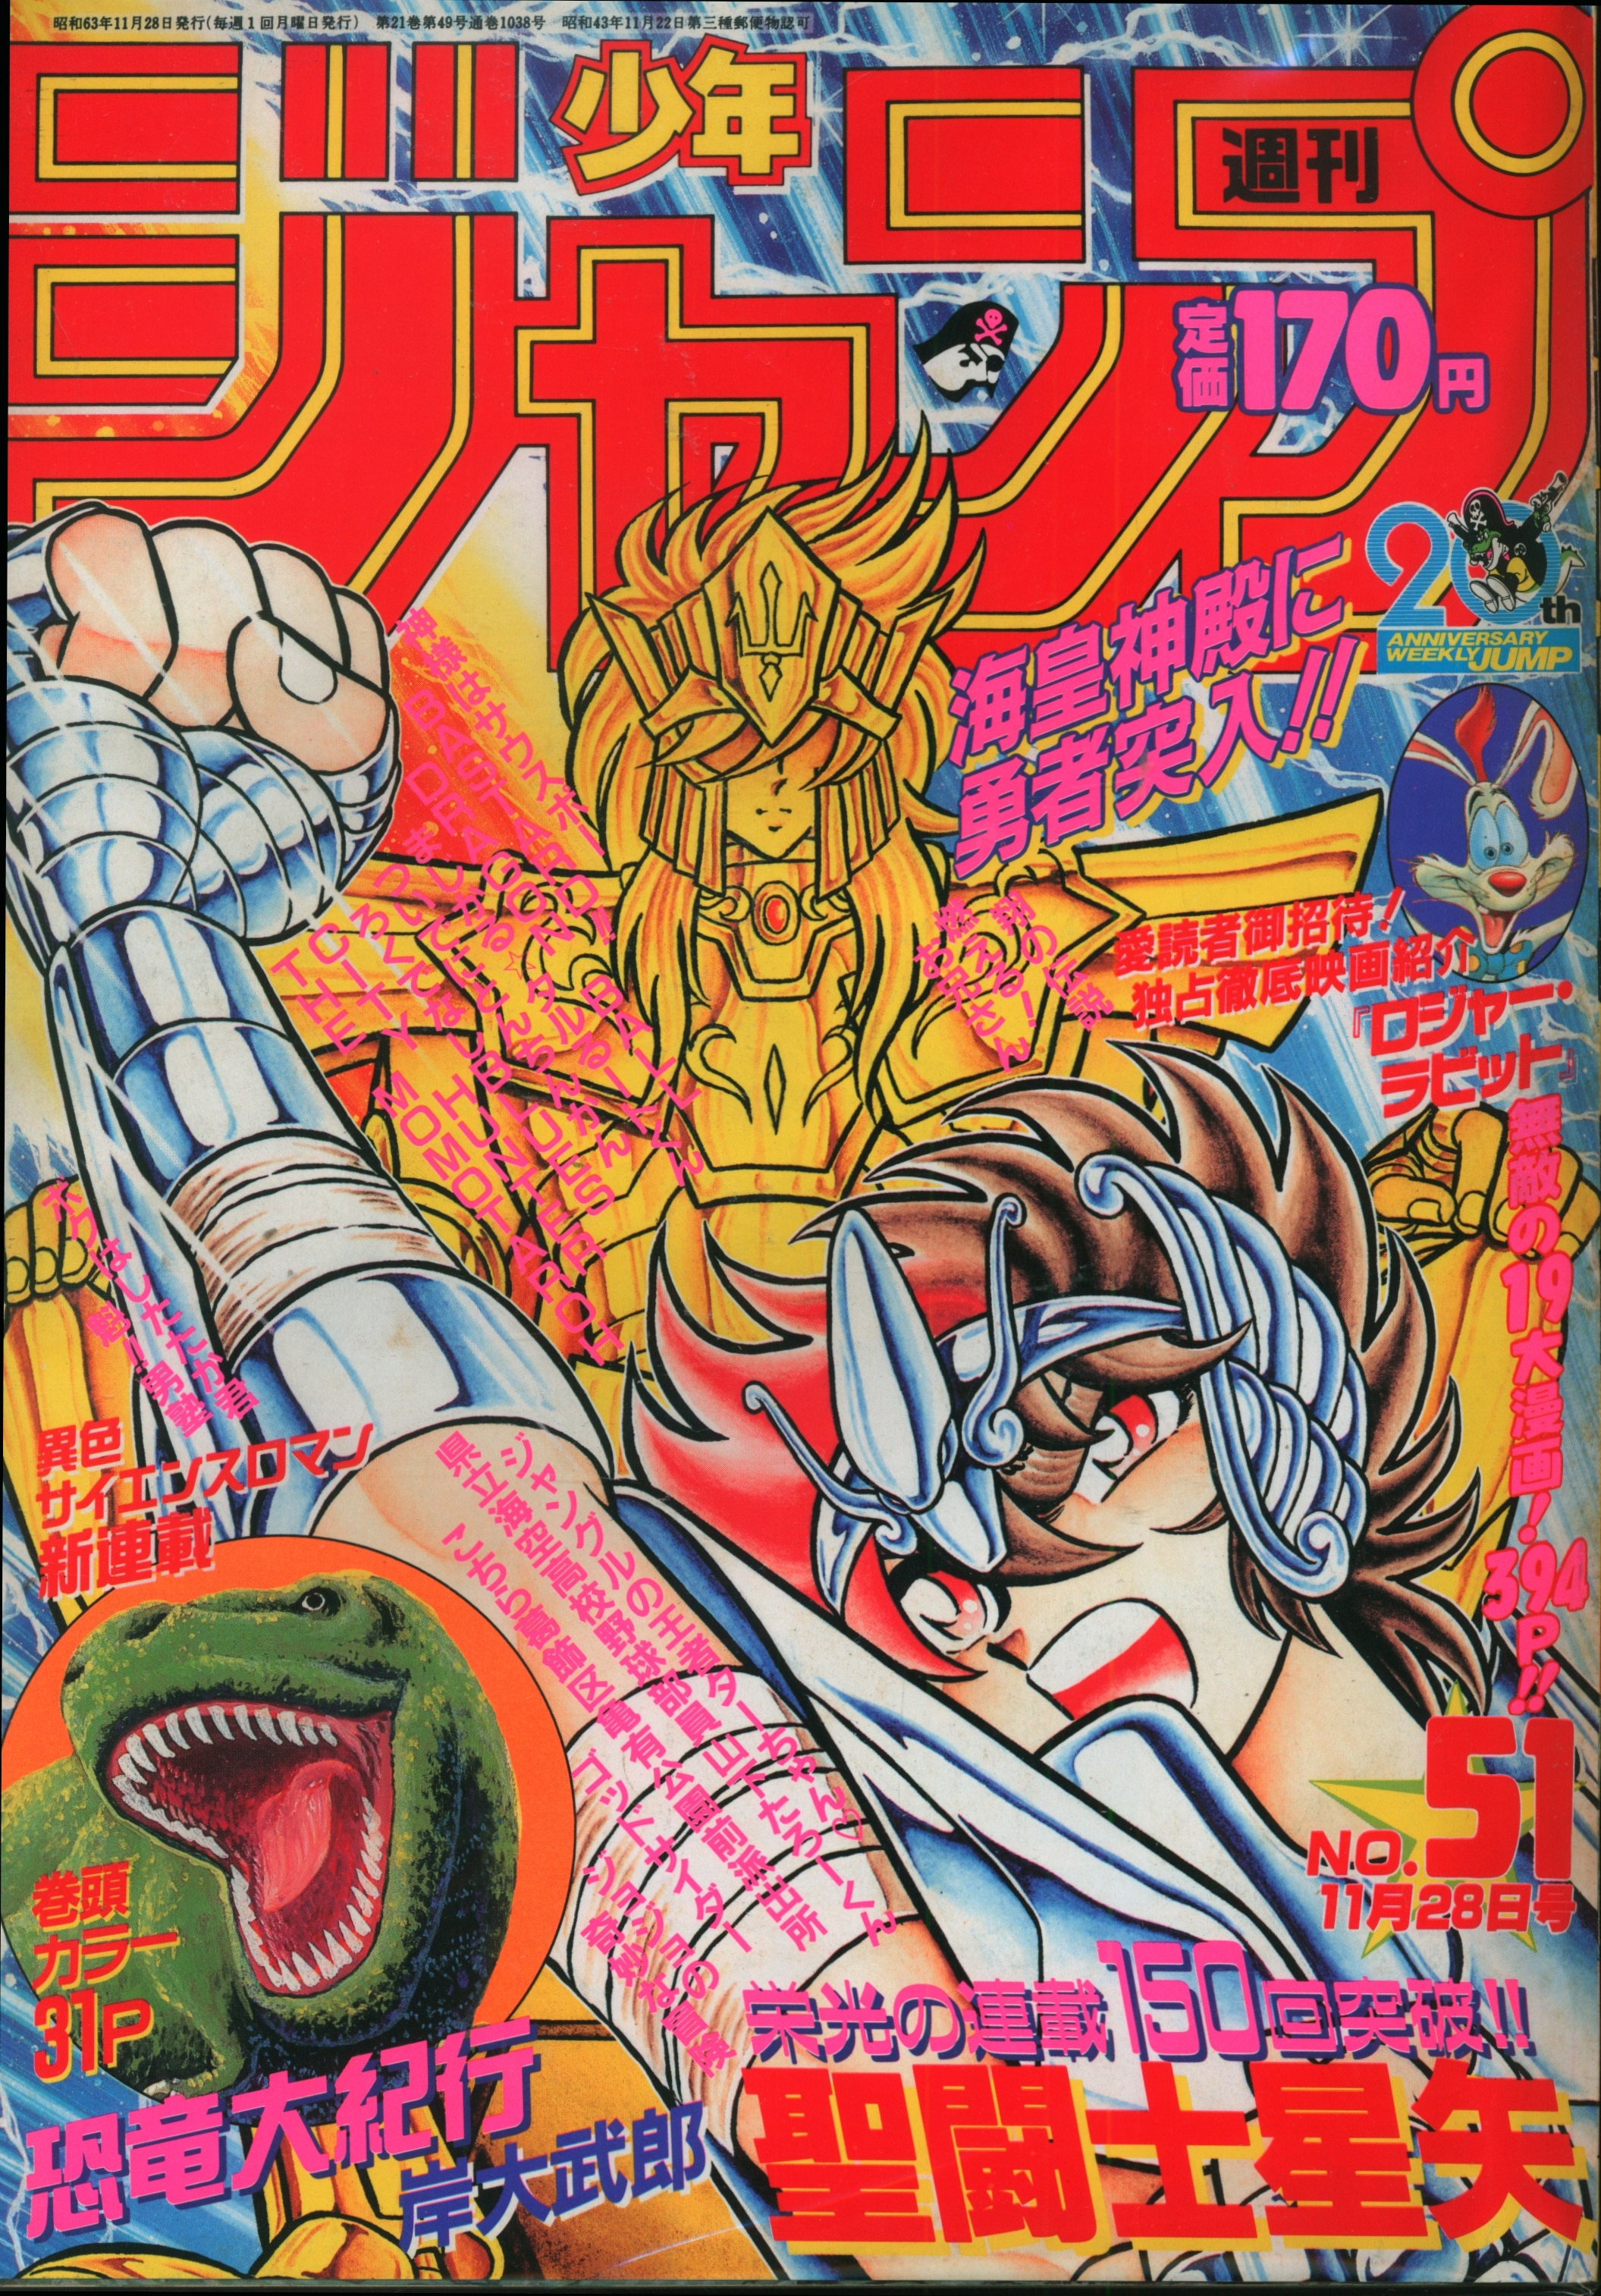 集英社 1988年(昭和63年)の漫画雑誌 週刊少年ジャンプ 1988年(昭和63年